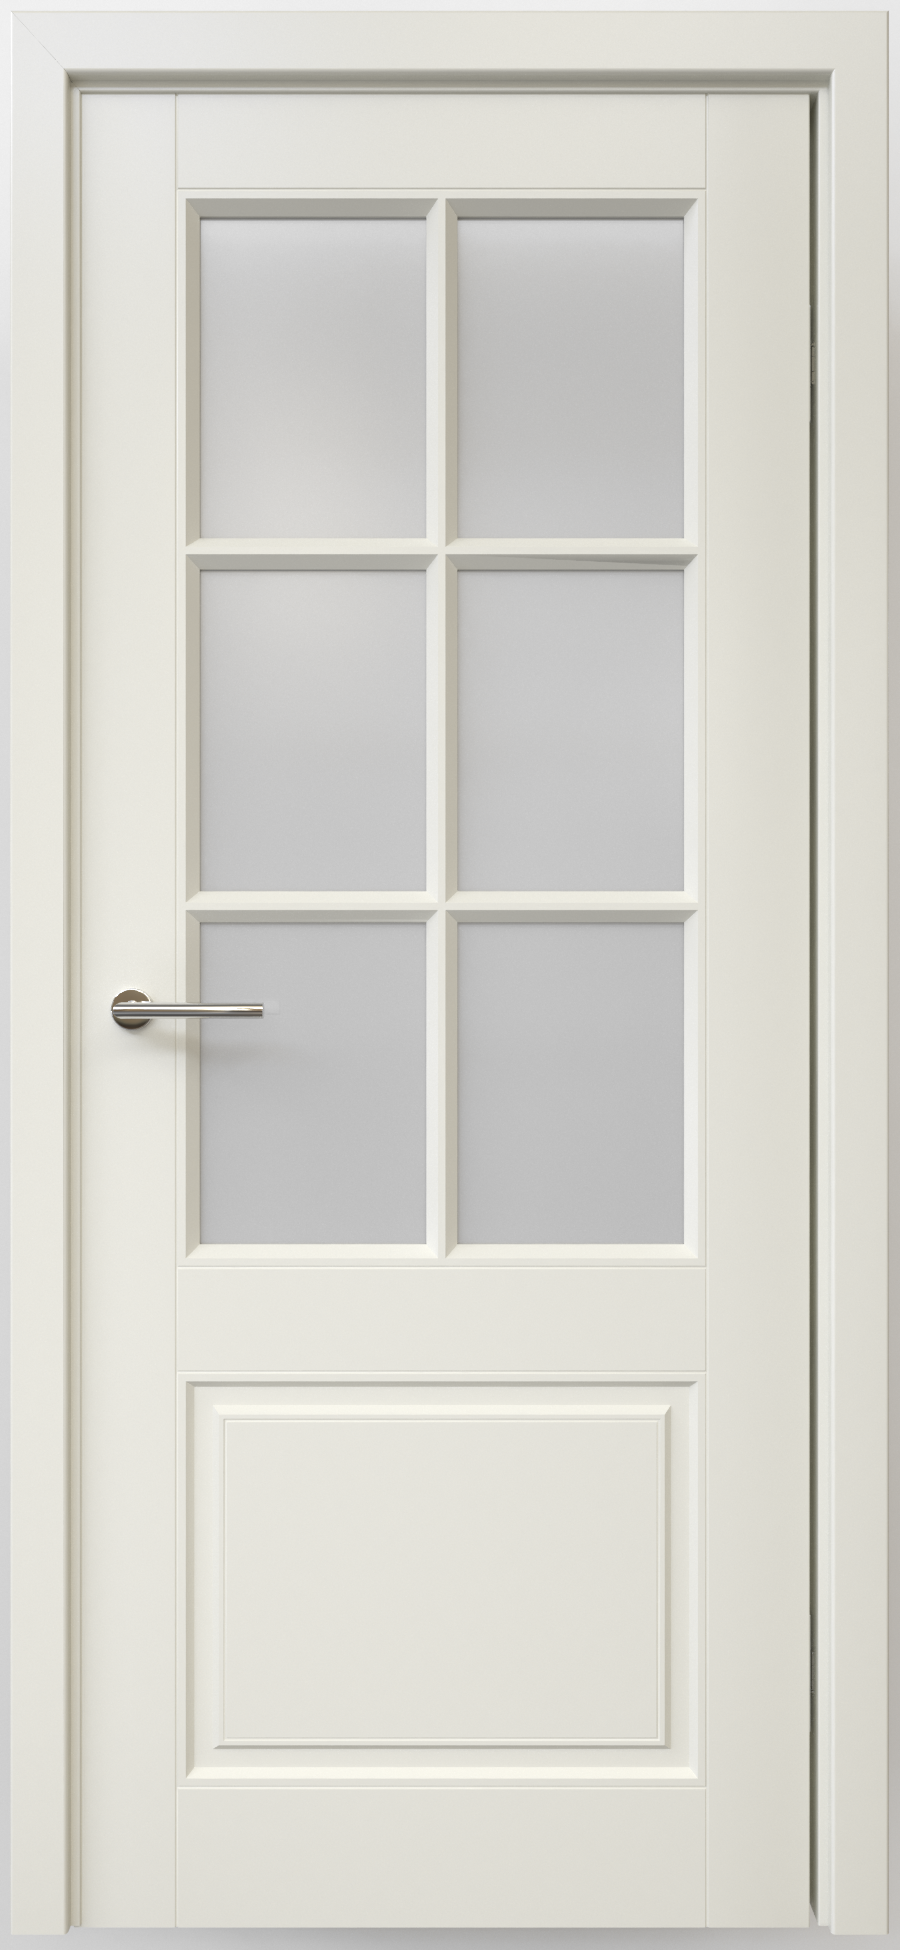 Полотно дверное остекленное Эмаль Классика-4 ЛЕВОЕ 800 латте стекло мателюкс (защелка маг.)